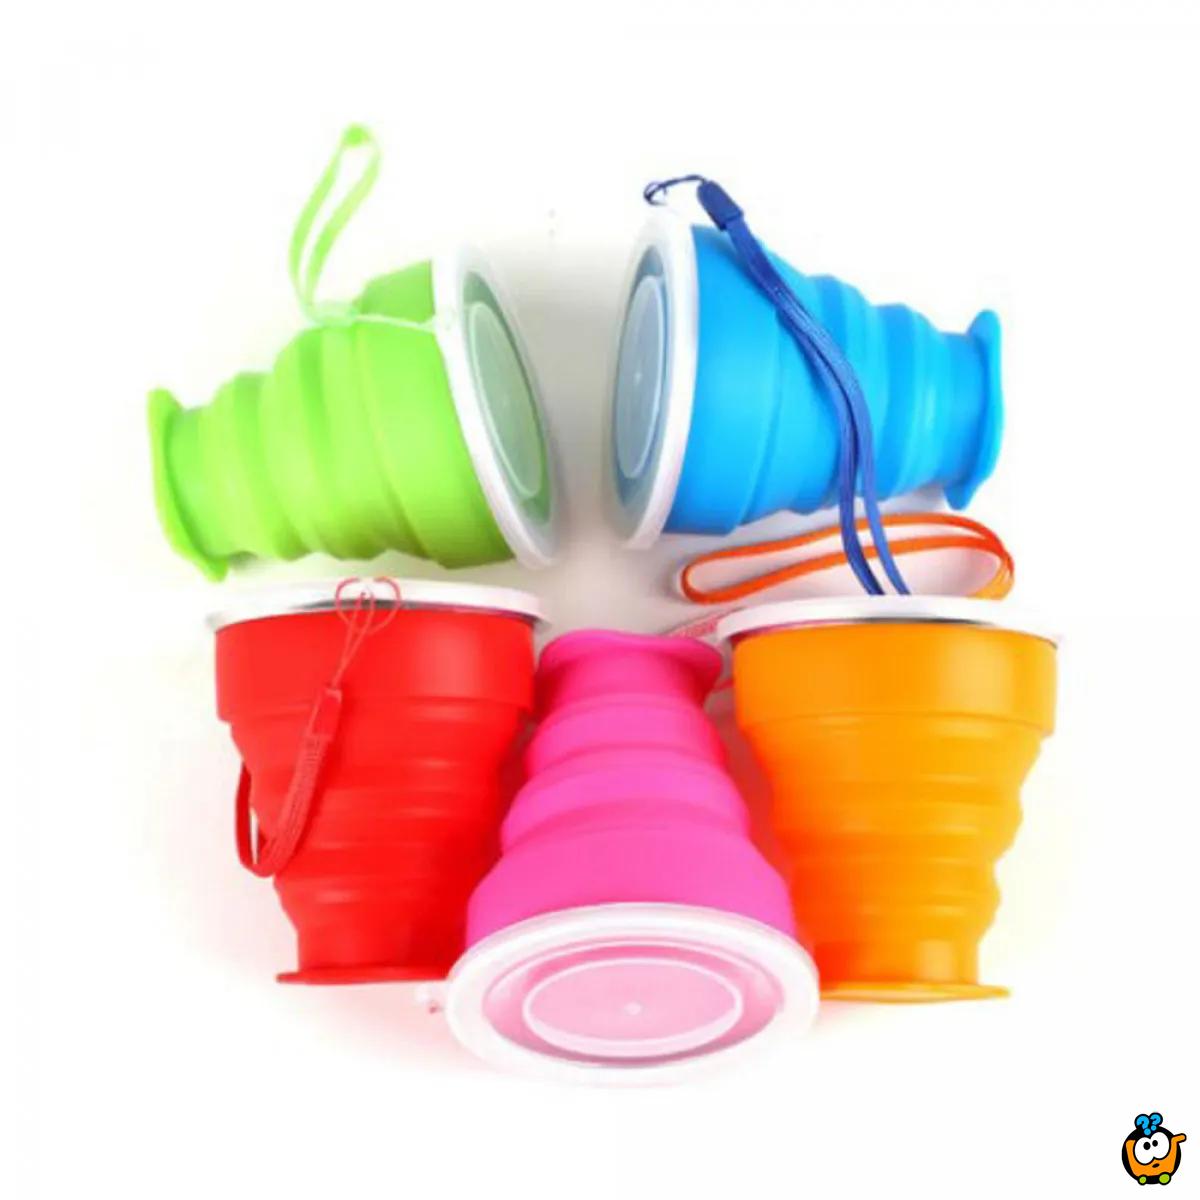 Candy colors cup - Sklopiva silikonska čaša